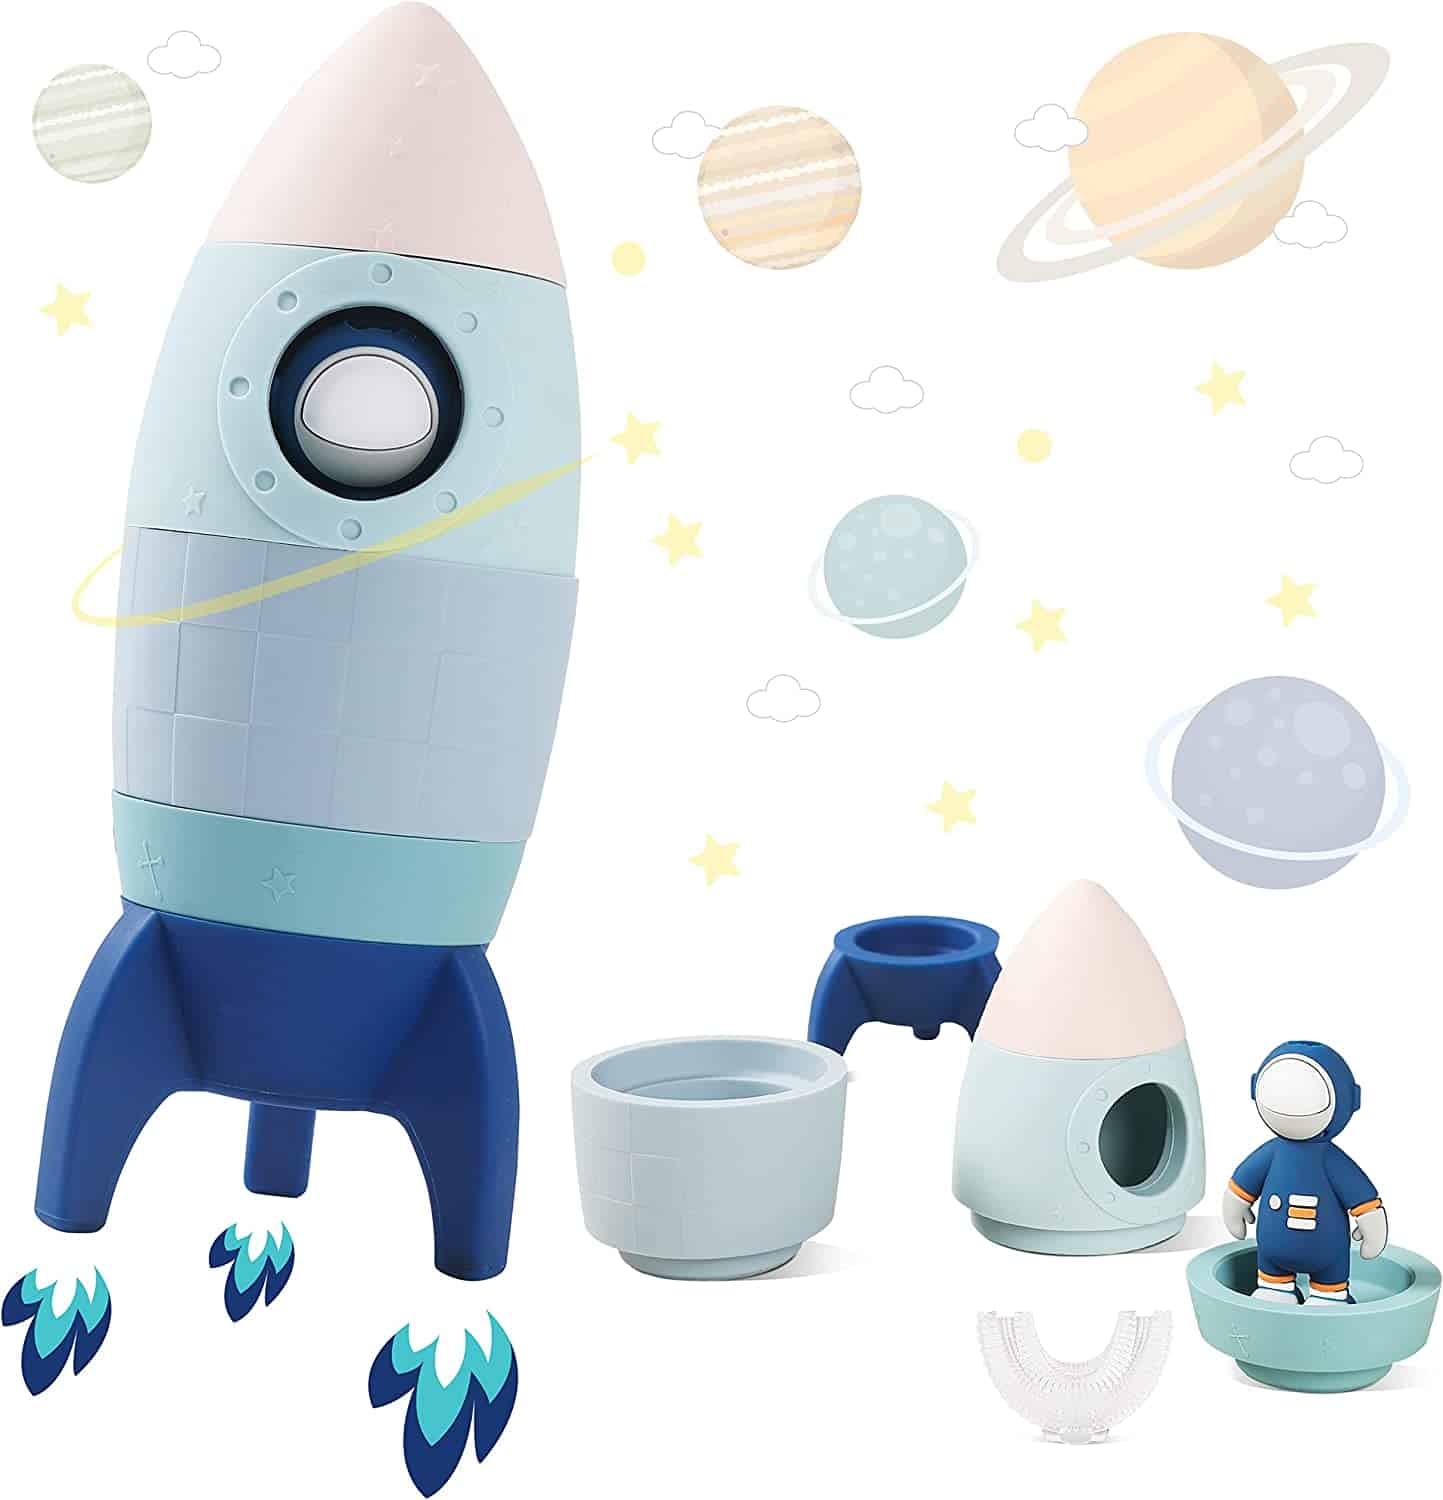 rocket stacking toys